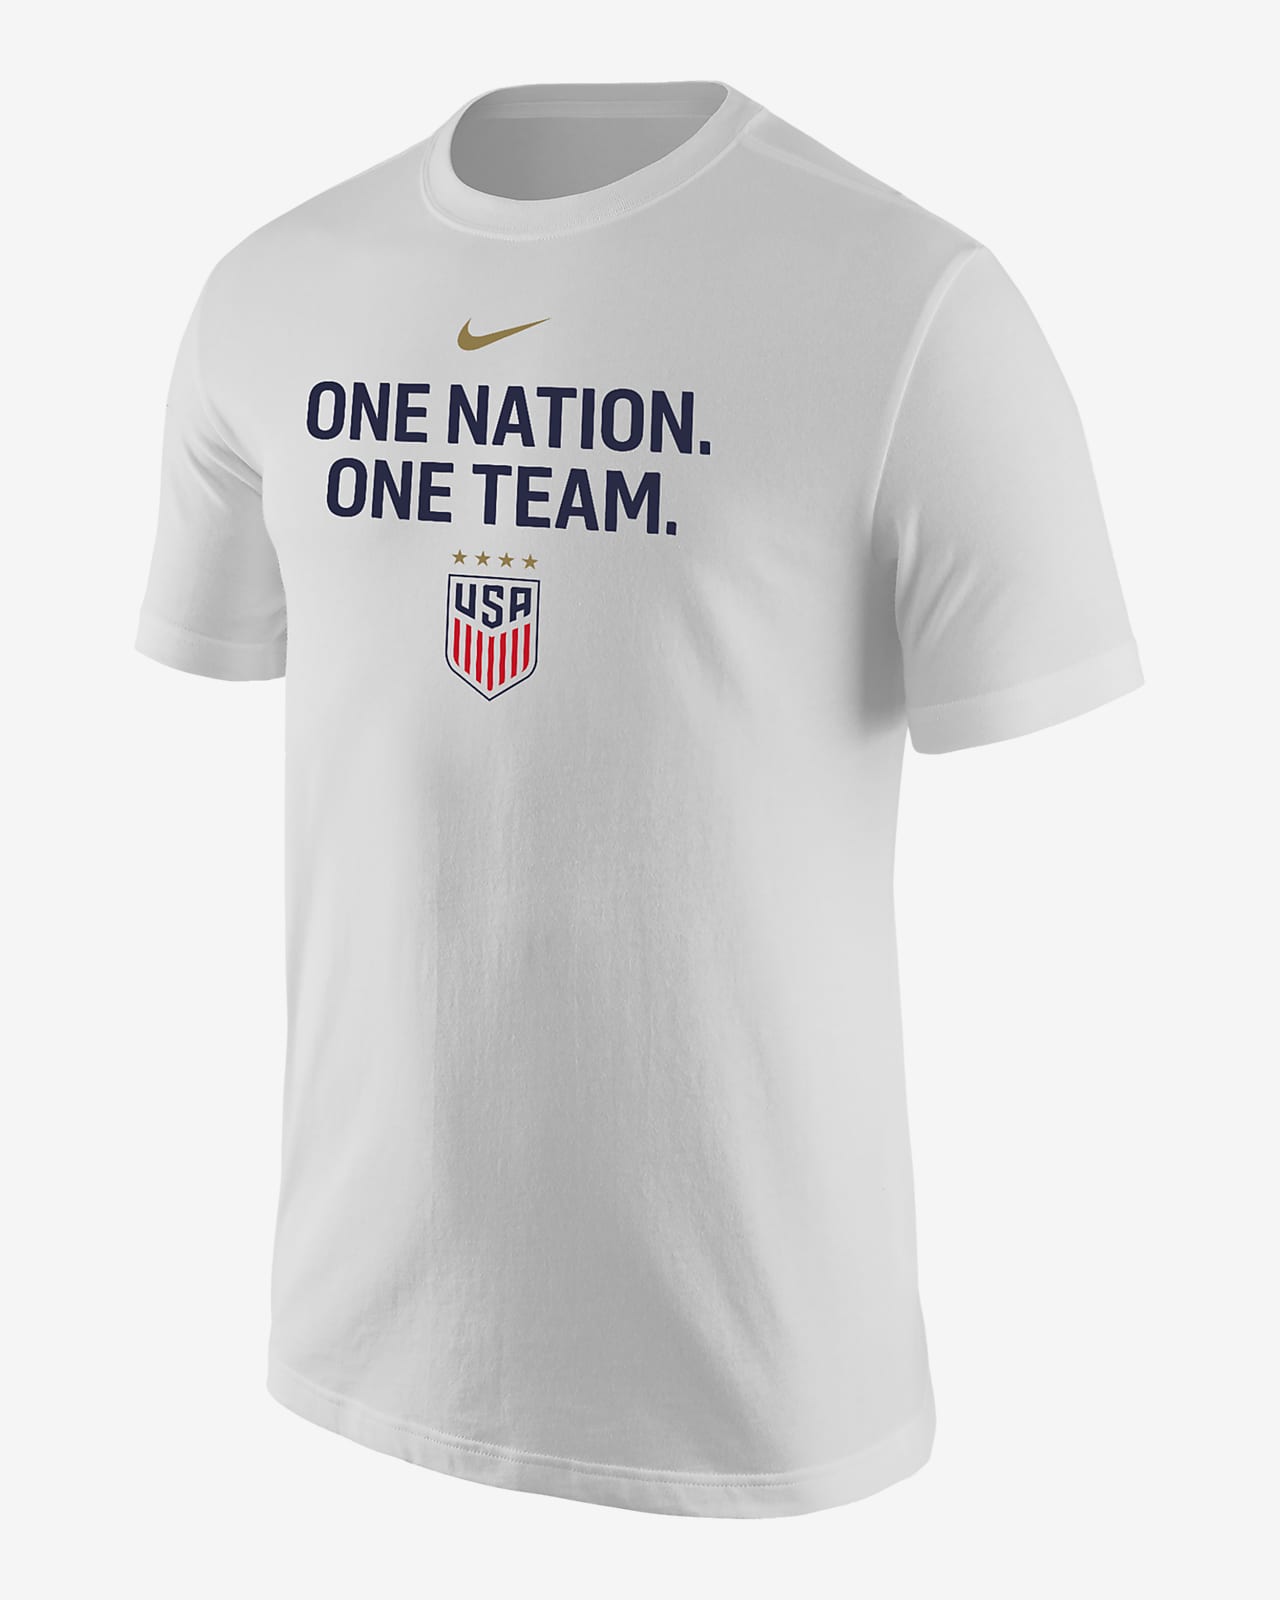 USWNT Men's Nike Soccer T-Shirt